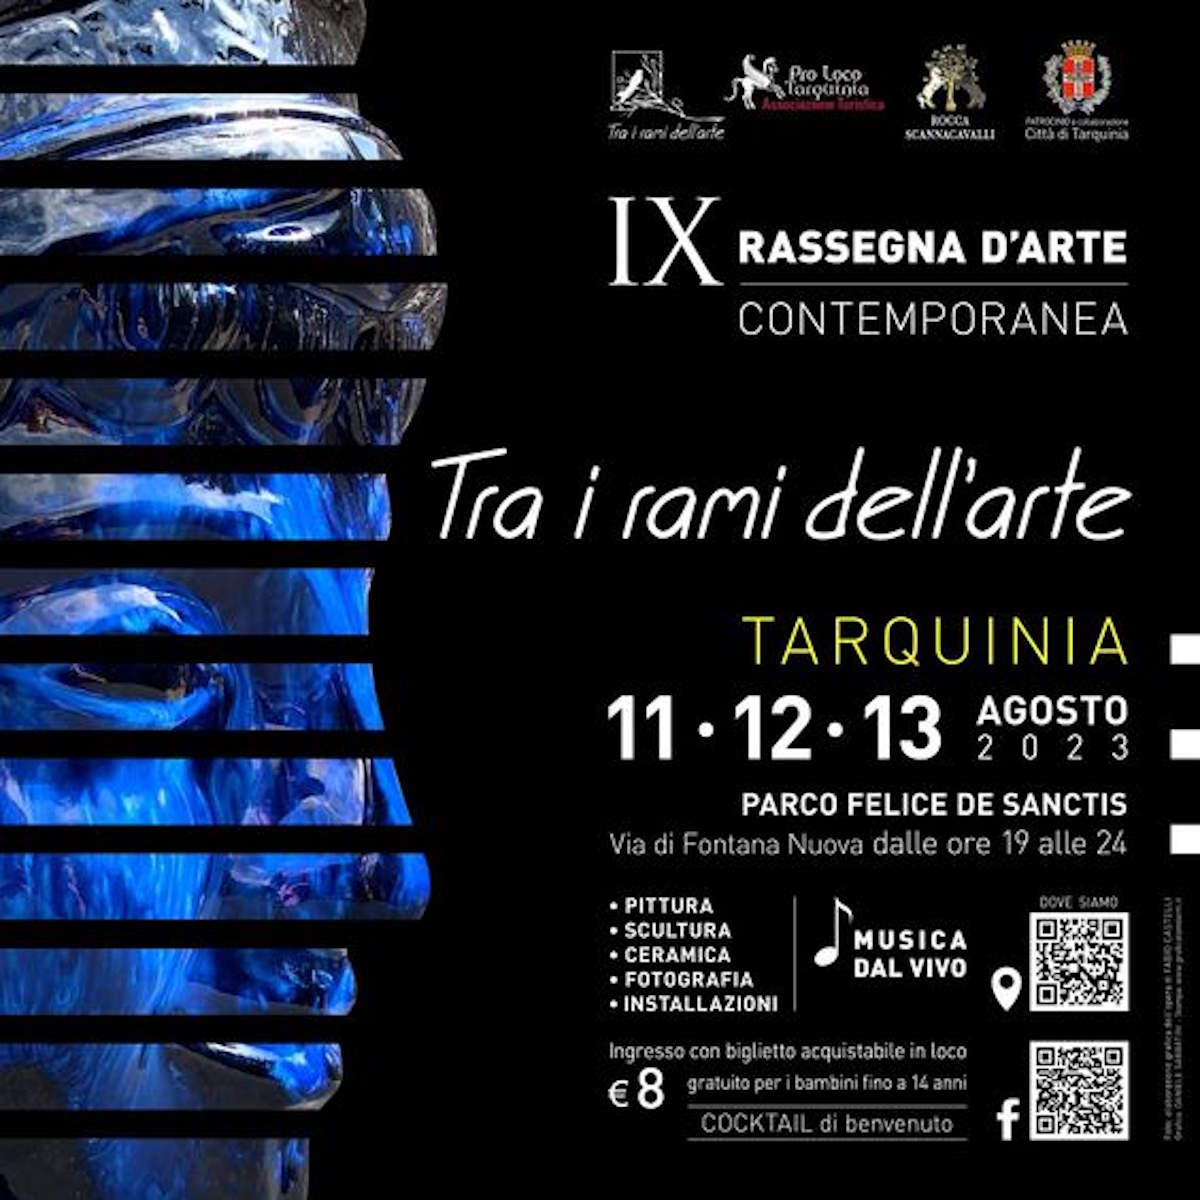 TRA I RAMI DELL’ARTE XI EDIZIONE - IX Rassegna d'arte contemporanea - 11/12/13 agosto a Tarquinia